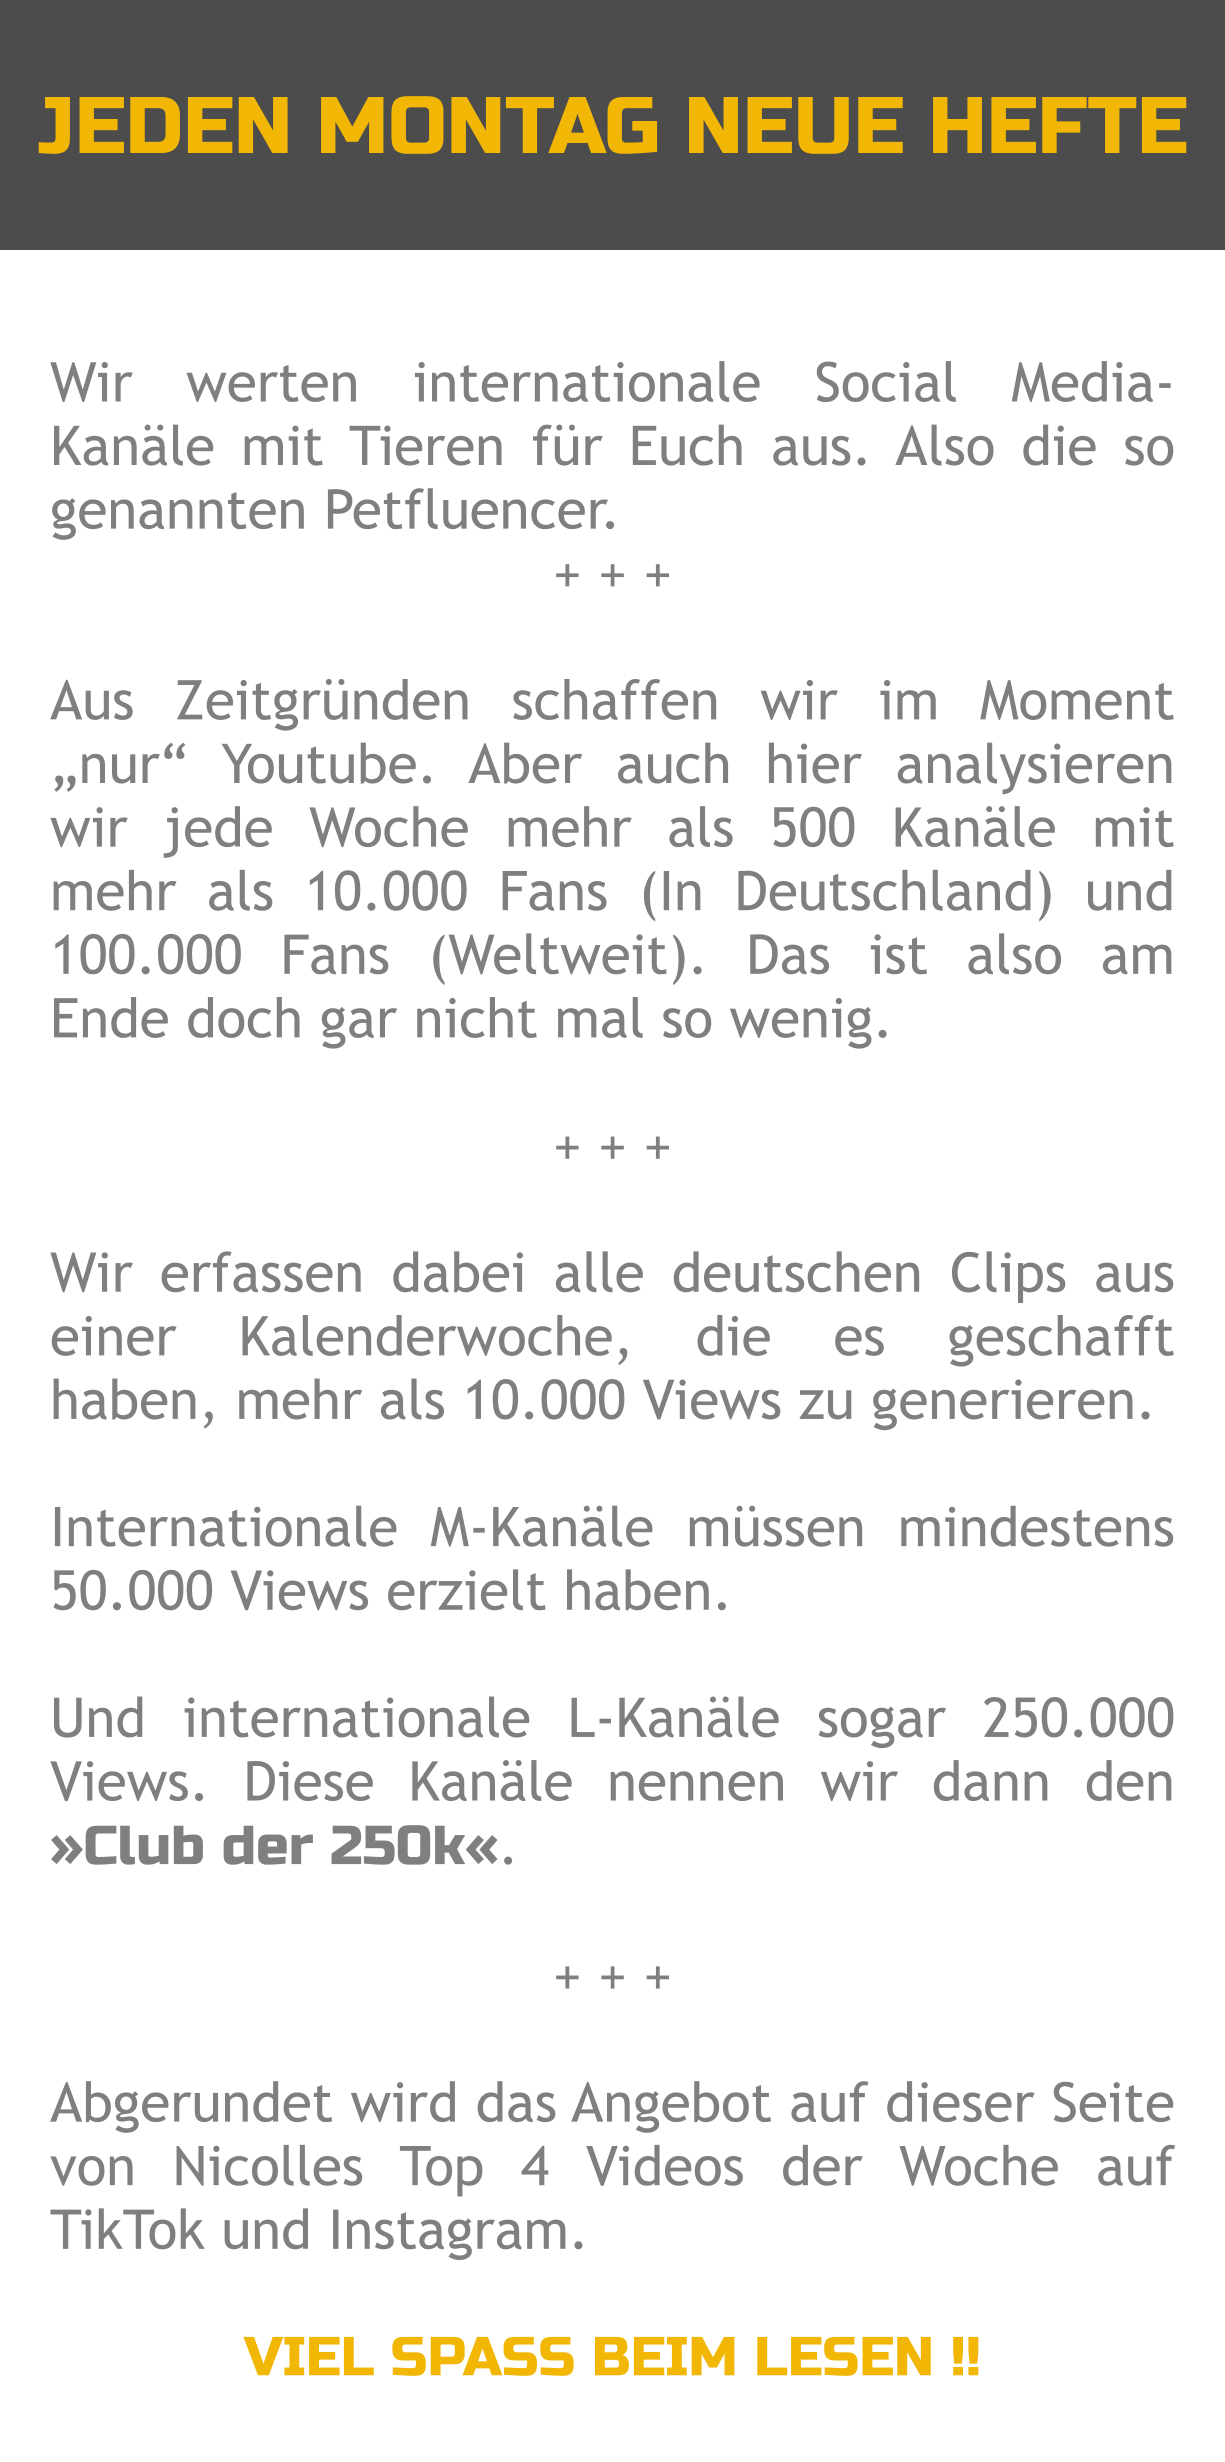 JEDEN MONTAG NEUE HEFTE Wir werten internationale Social Media-Kanäle mit Tieren für Euch aus. Also die so genannten Petfluencer. + + +  Aus Zeitgründen schaffen wir im Moment „nur“ Youtube. Aber auch hier analysieren wir jede Woche mehr als 500 Kanäle mit mehr als 10.000 Fans (In Deutschland) und 100.000 Fans (Weltweit). Das ist also am Ende doch gar nicht mal so wenig.  + + +  Wir erfassen dabei alle deutschen Clips aus einer Kalenderwoche, die es geschafft haben, mehr als 10.000 Views zu generieren.   Internationale M-Kanäle müssen mindestens 50.000 Views erzielt haben.  Und internationale L-Kanäle sogar 250.000 Views. Diese Kanäle nennen wir dann den »Club der 250k«.  + + +  Abgerundet wird das Angebot auf dieser Seite von Nicolles Top 4 Videos der Woche auf TikTok und Instagram.  VIEL SPASS BEIM LESEN !!